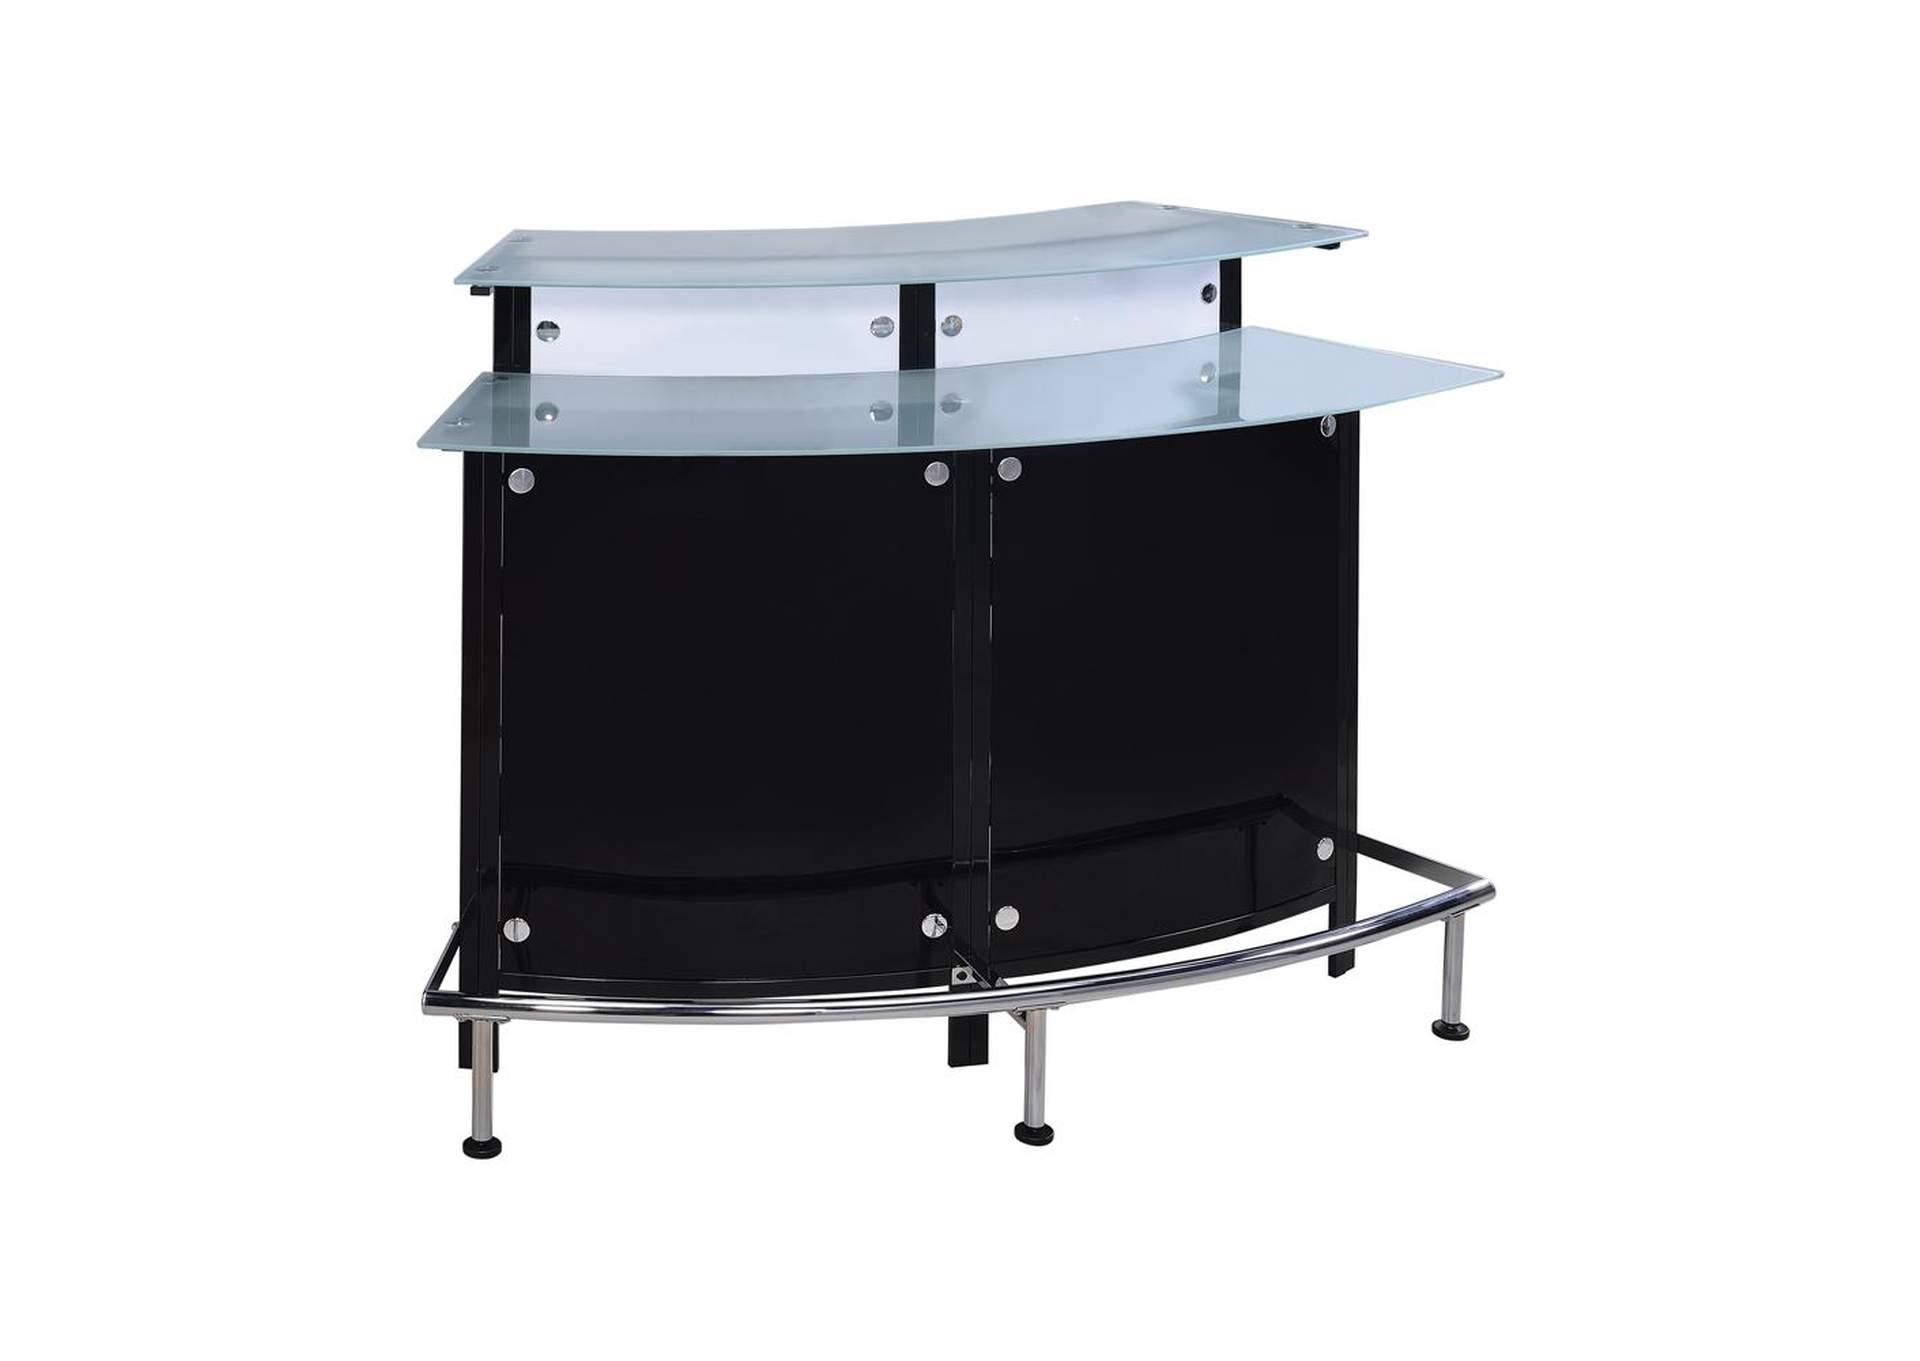 Two-Shelf Contemporary Chrome and Black Bar Unit,Coaster Furniture